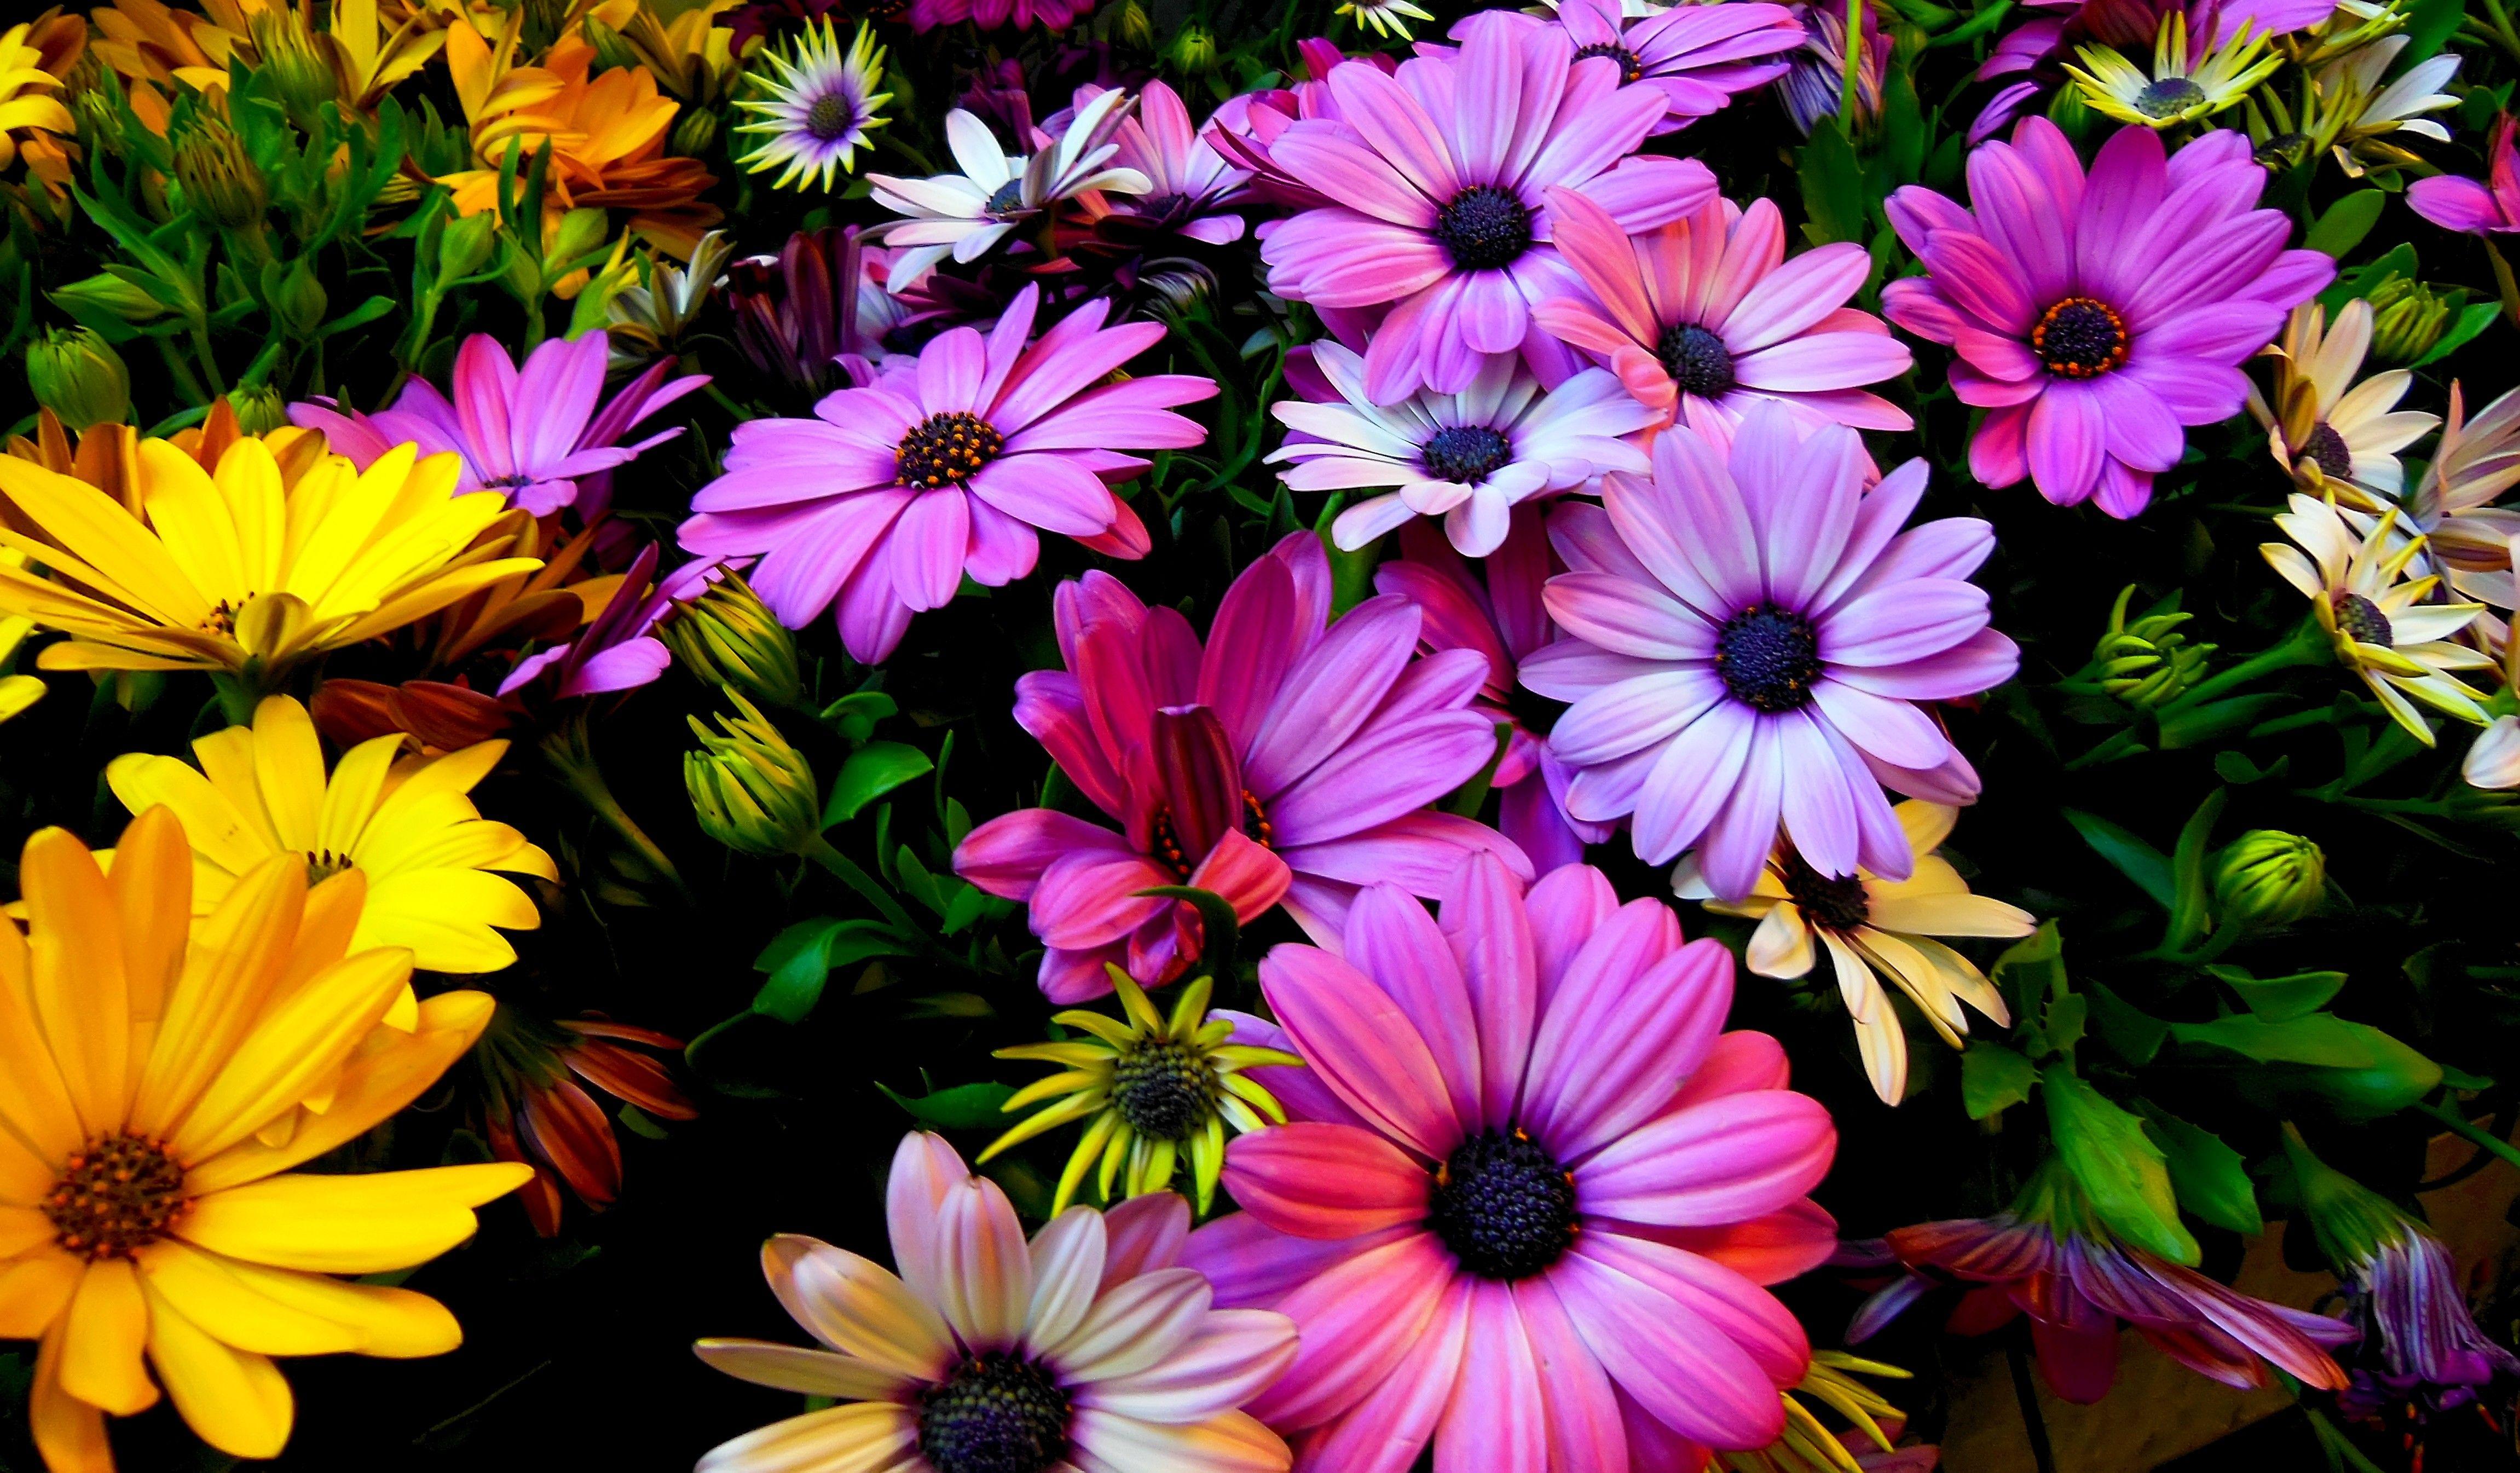 Spring Floral Desktop Wallpapers - Top Free Spring Floral Desktop